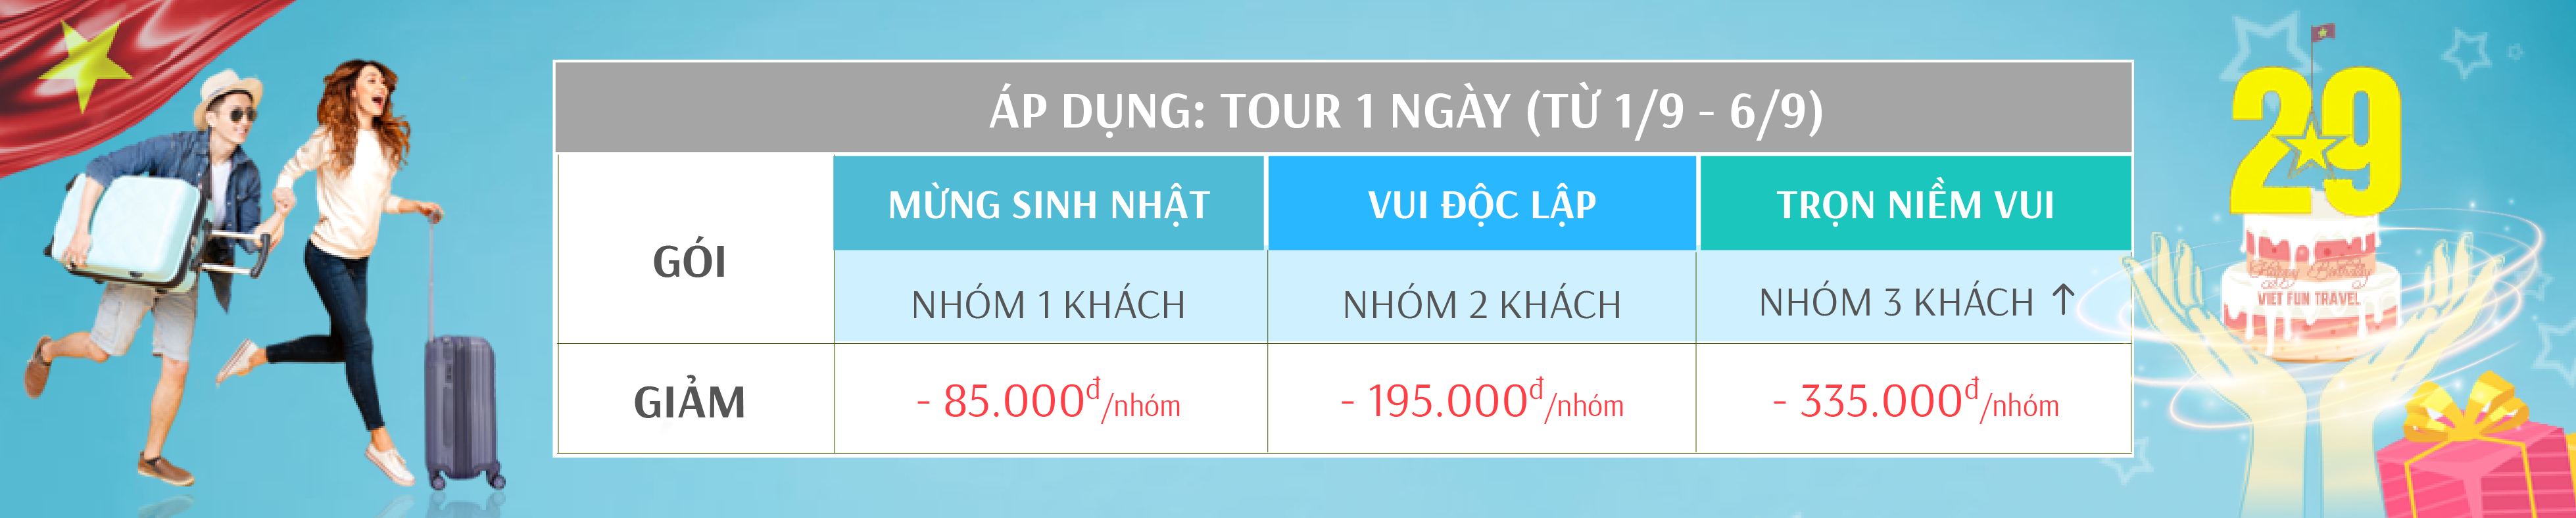 Tour [CHẤT LƯỢNG] Tham Quan Sài Gòn(tp.HCM) 1 Ngày giá từ 730k | Viet Fun Travel